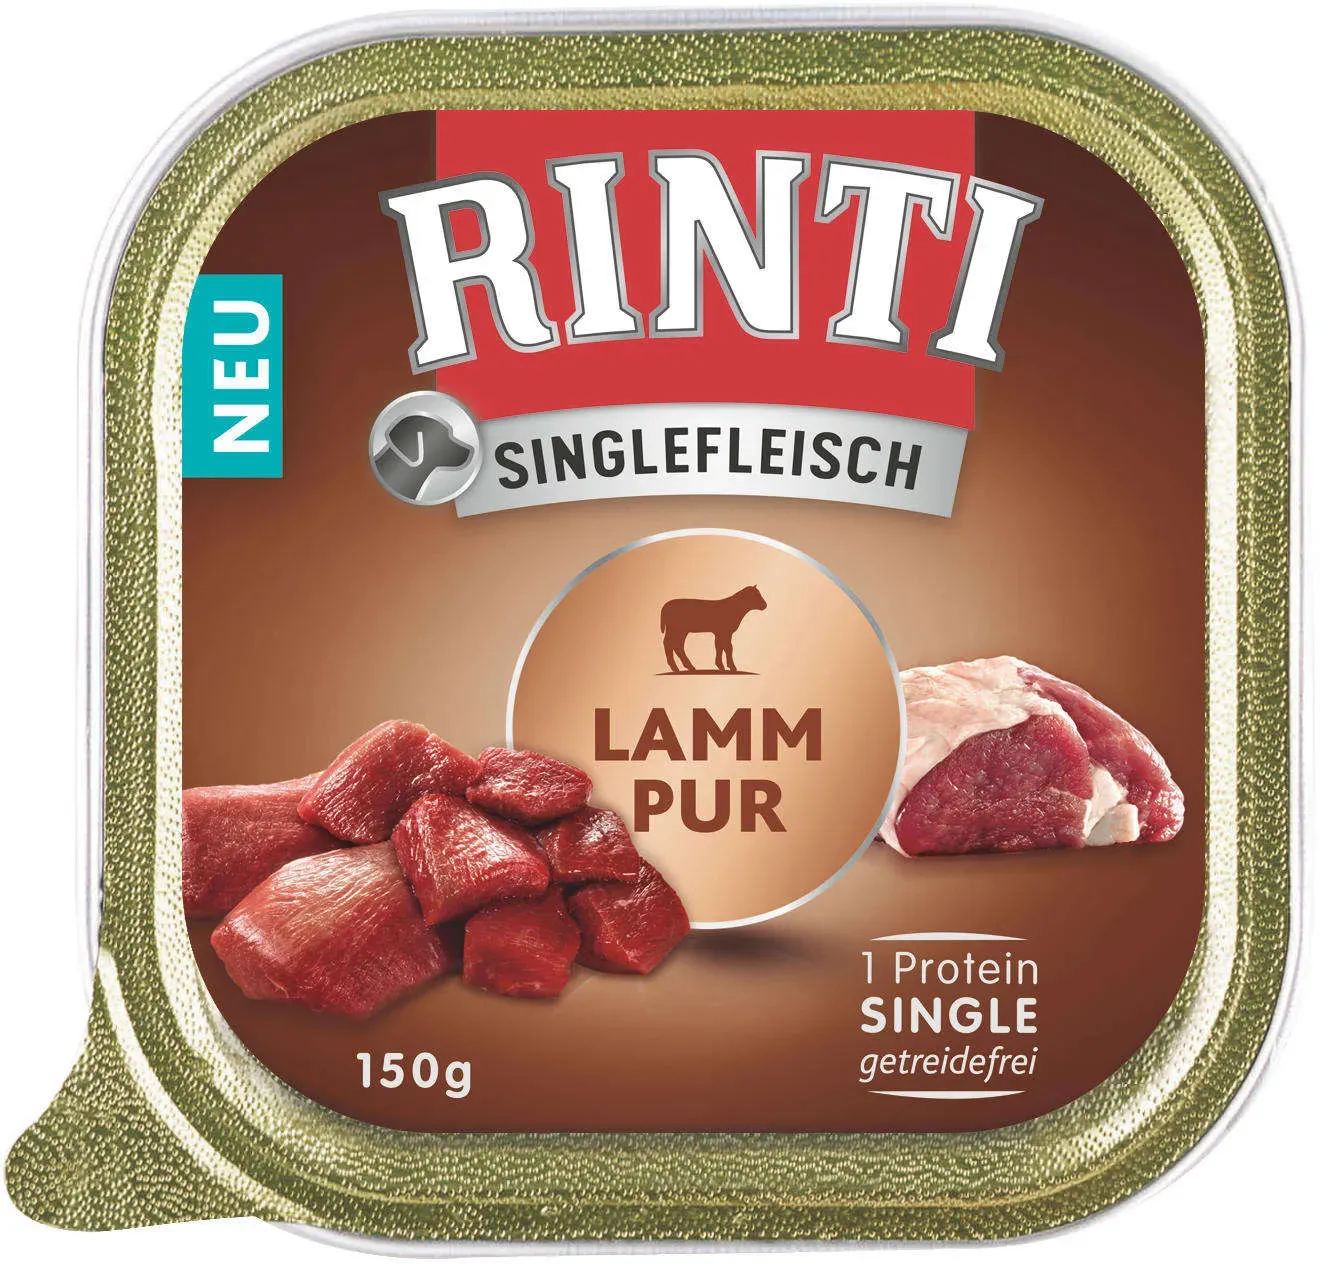 RINTI Hunde-Nassfutter Singlefleisch Lamm Pur